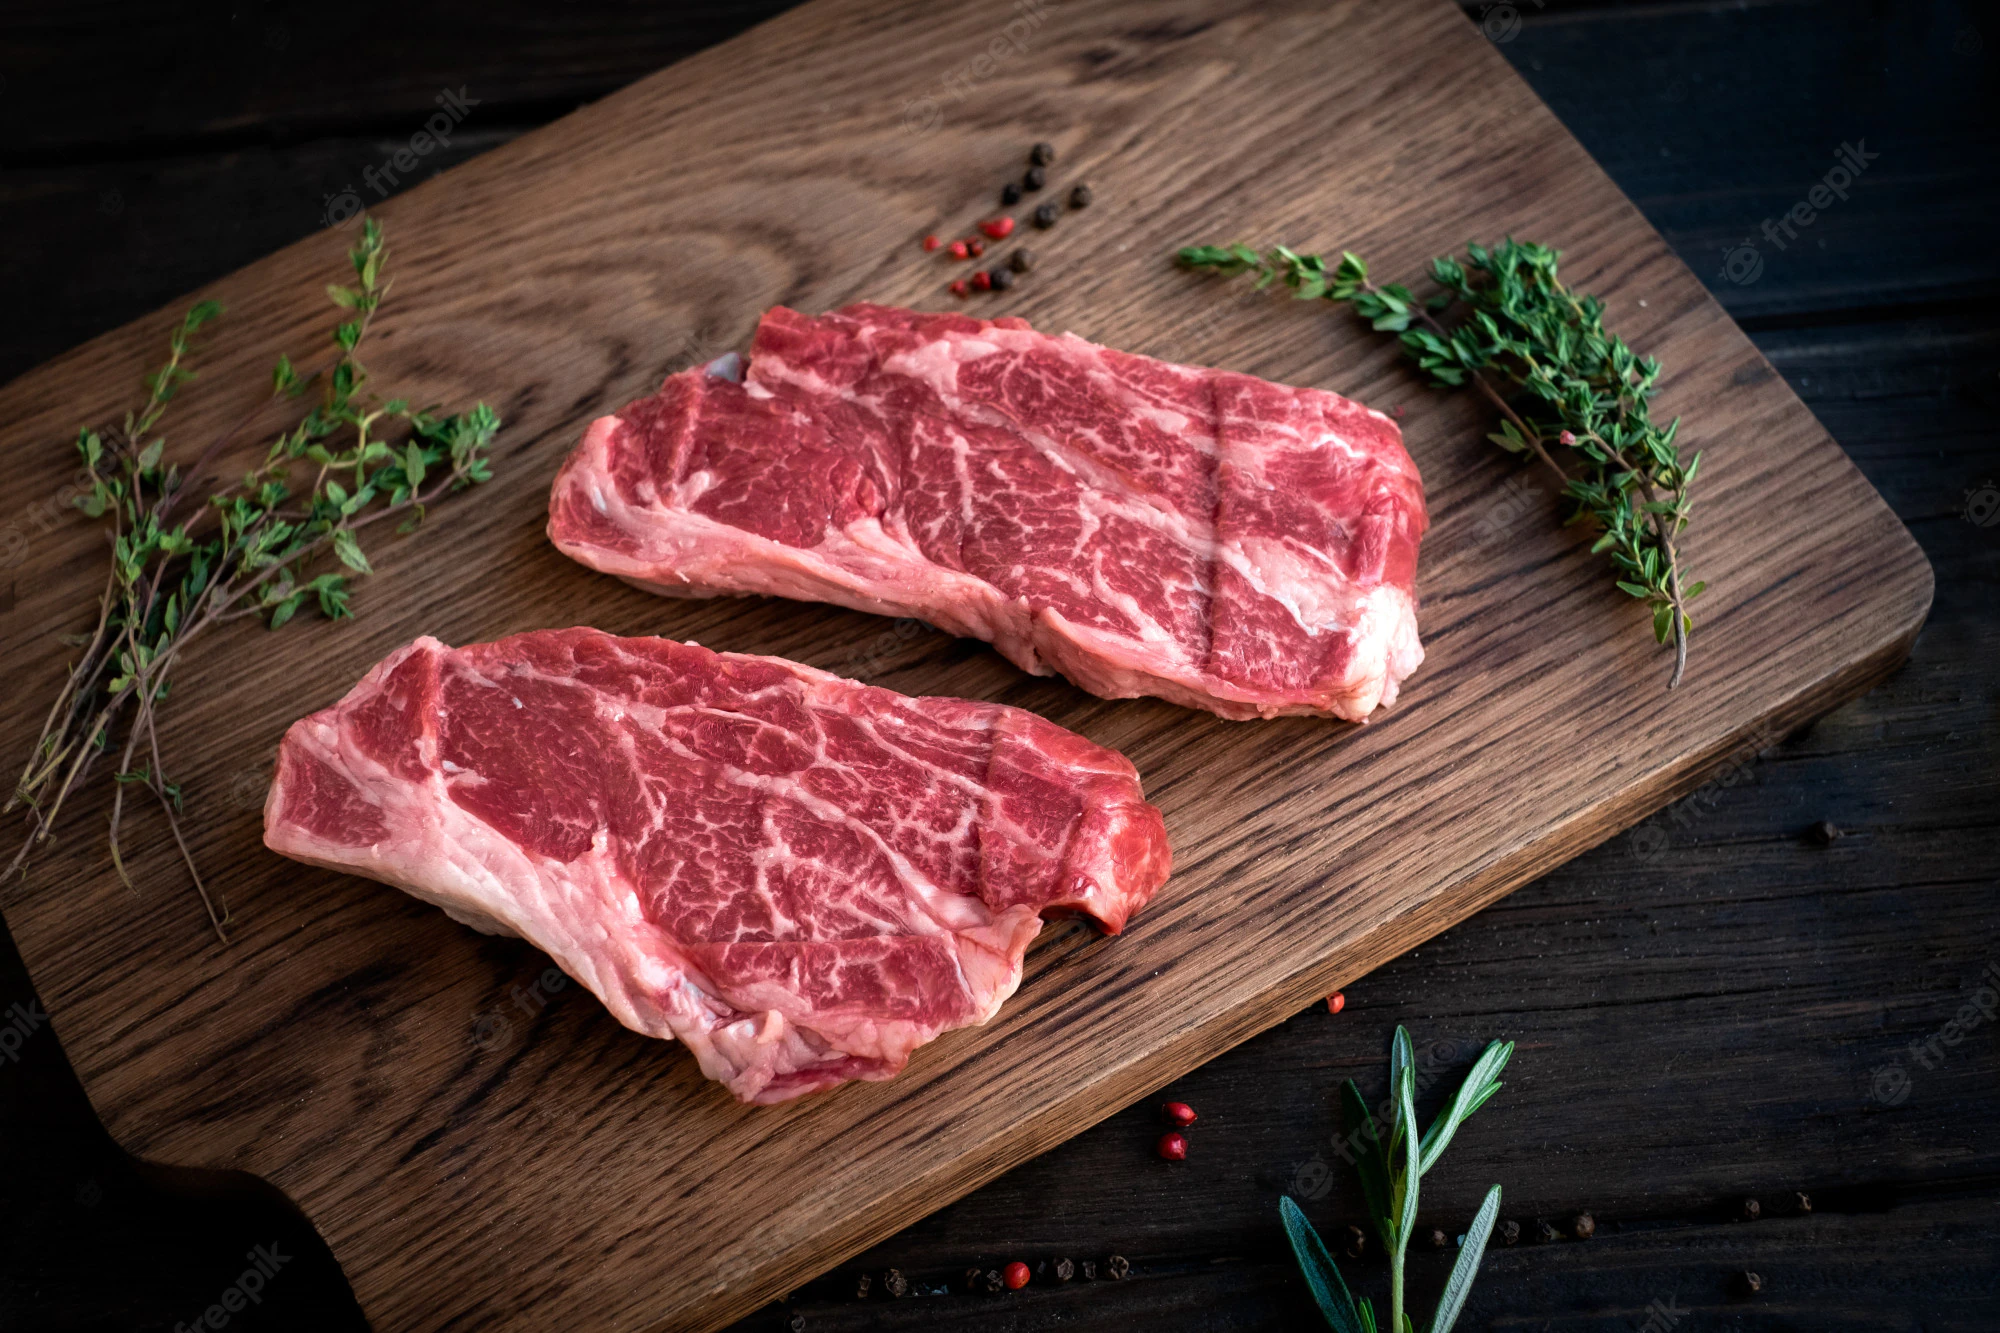 raw-chuck-roll-steaks-premium-beef-with-seasonings-wooden-board-top-view-rustic-stule_94053-1